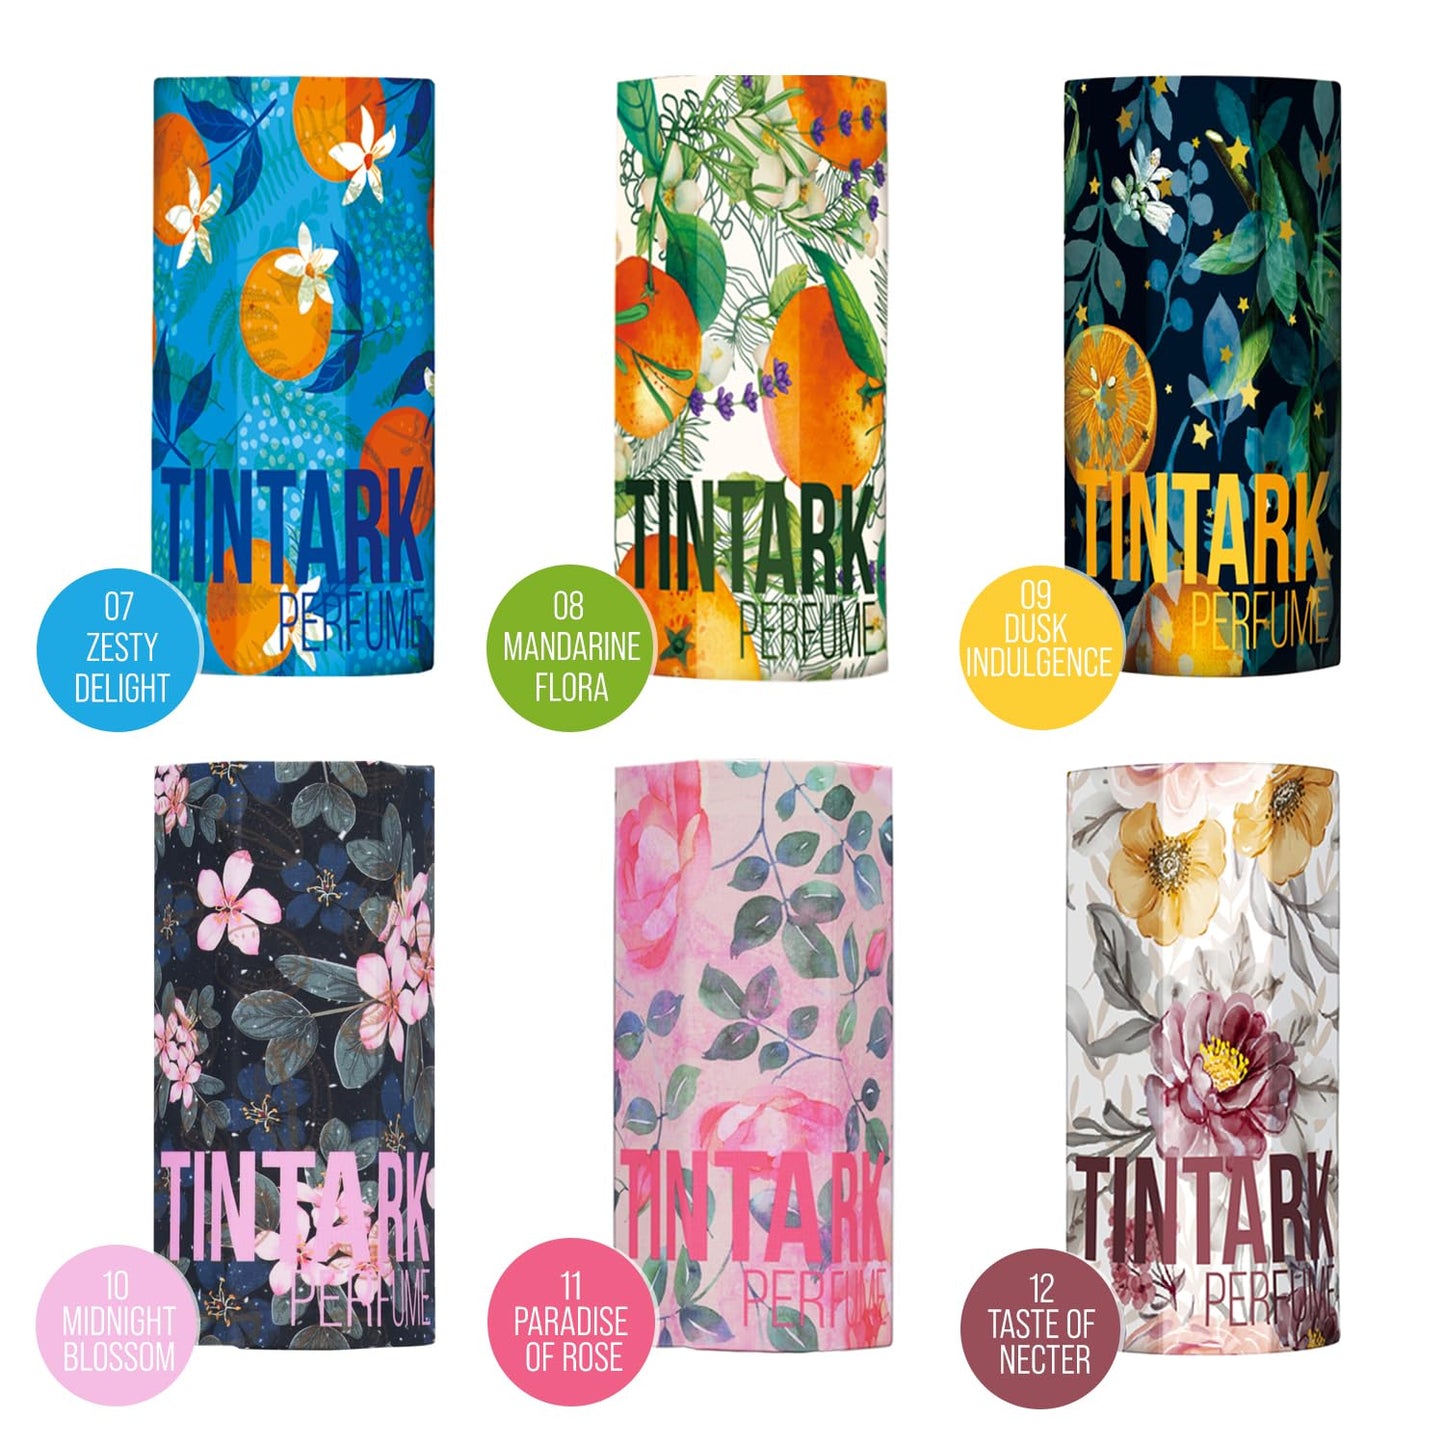 Stick Parfum Solide Tintark - 11 PARADIS DE ROSE